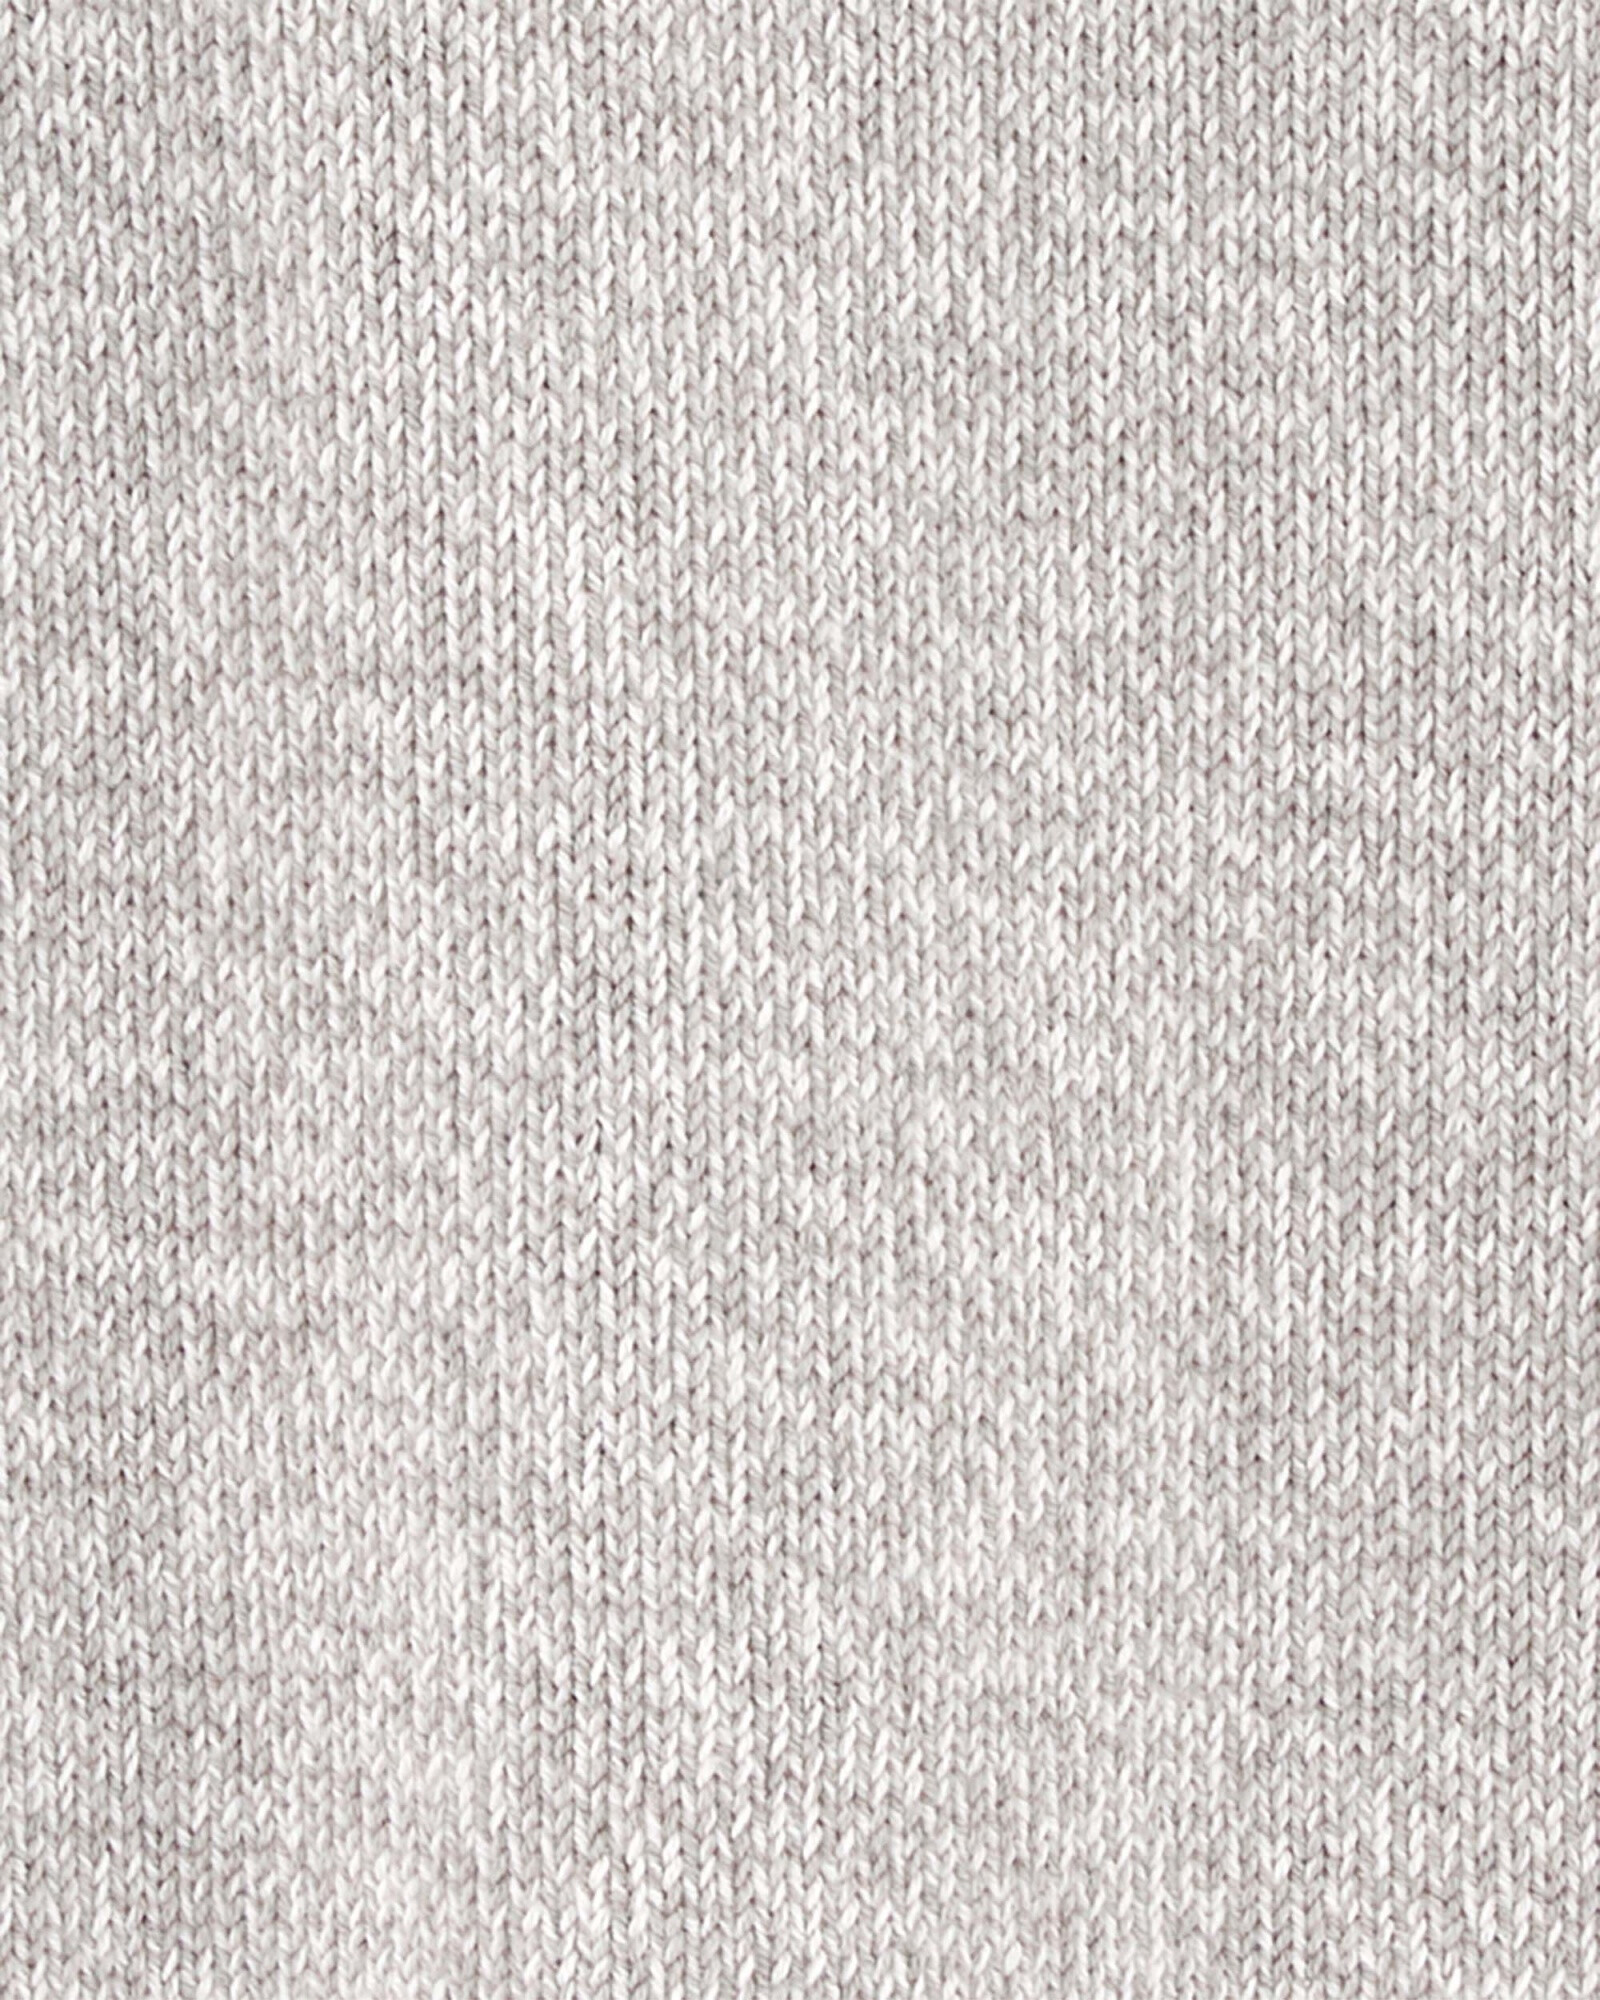 Buzo de algodón, gris jaspeado Sin color